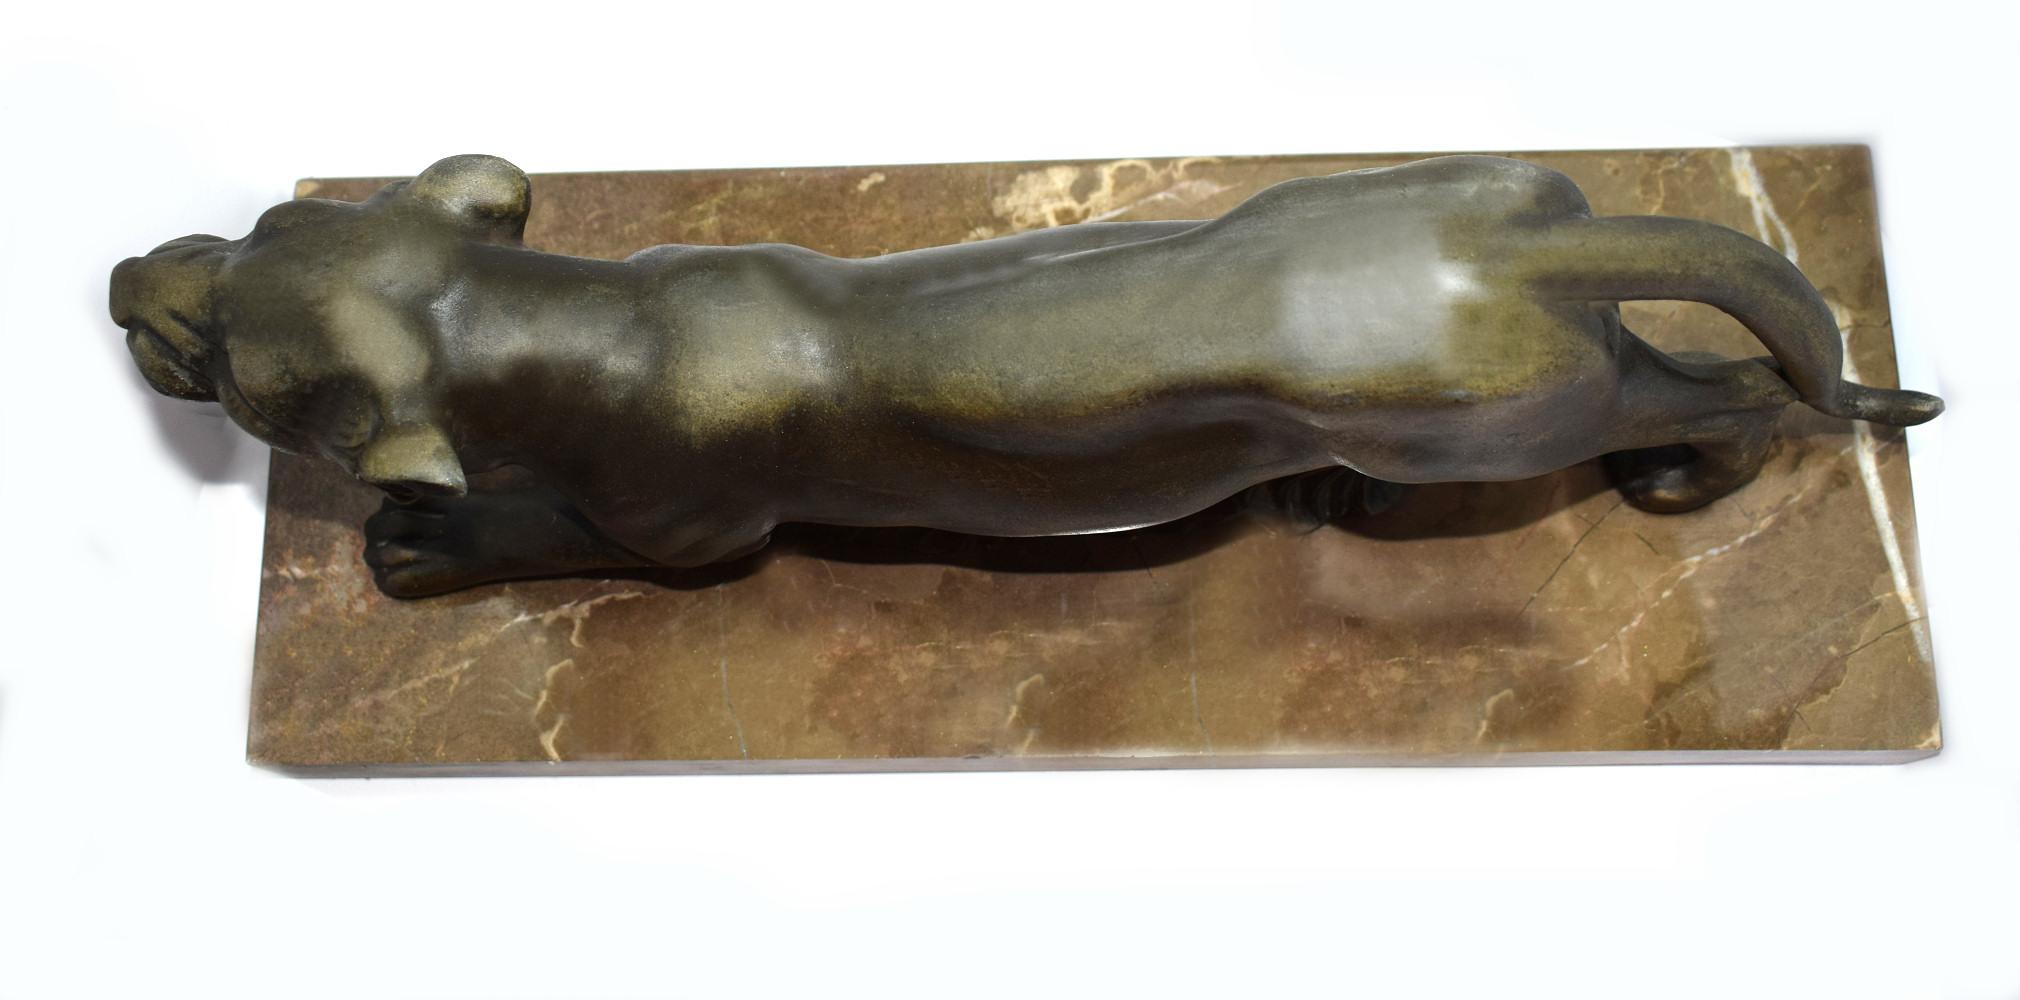 Für Ihre Betrachtung ist diese sehr gut skulptiert Art Deco prowling Panther Skulptur, die auf einem Marmorsockel sitzt. Der Körper des Panthers ist aus Zinn und hat einen wunderschönen patinierten Kupfereffekt mit einem milden Verdi Gris. Der